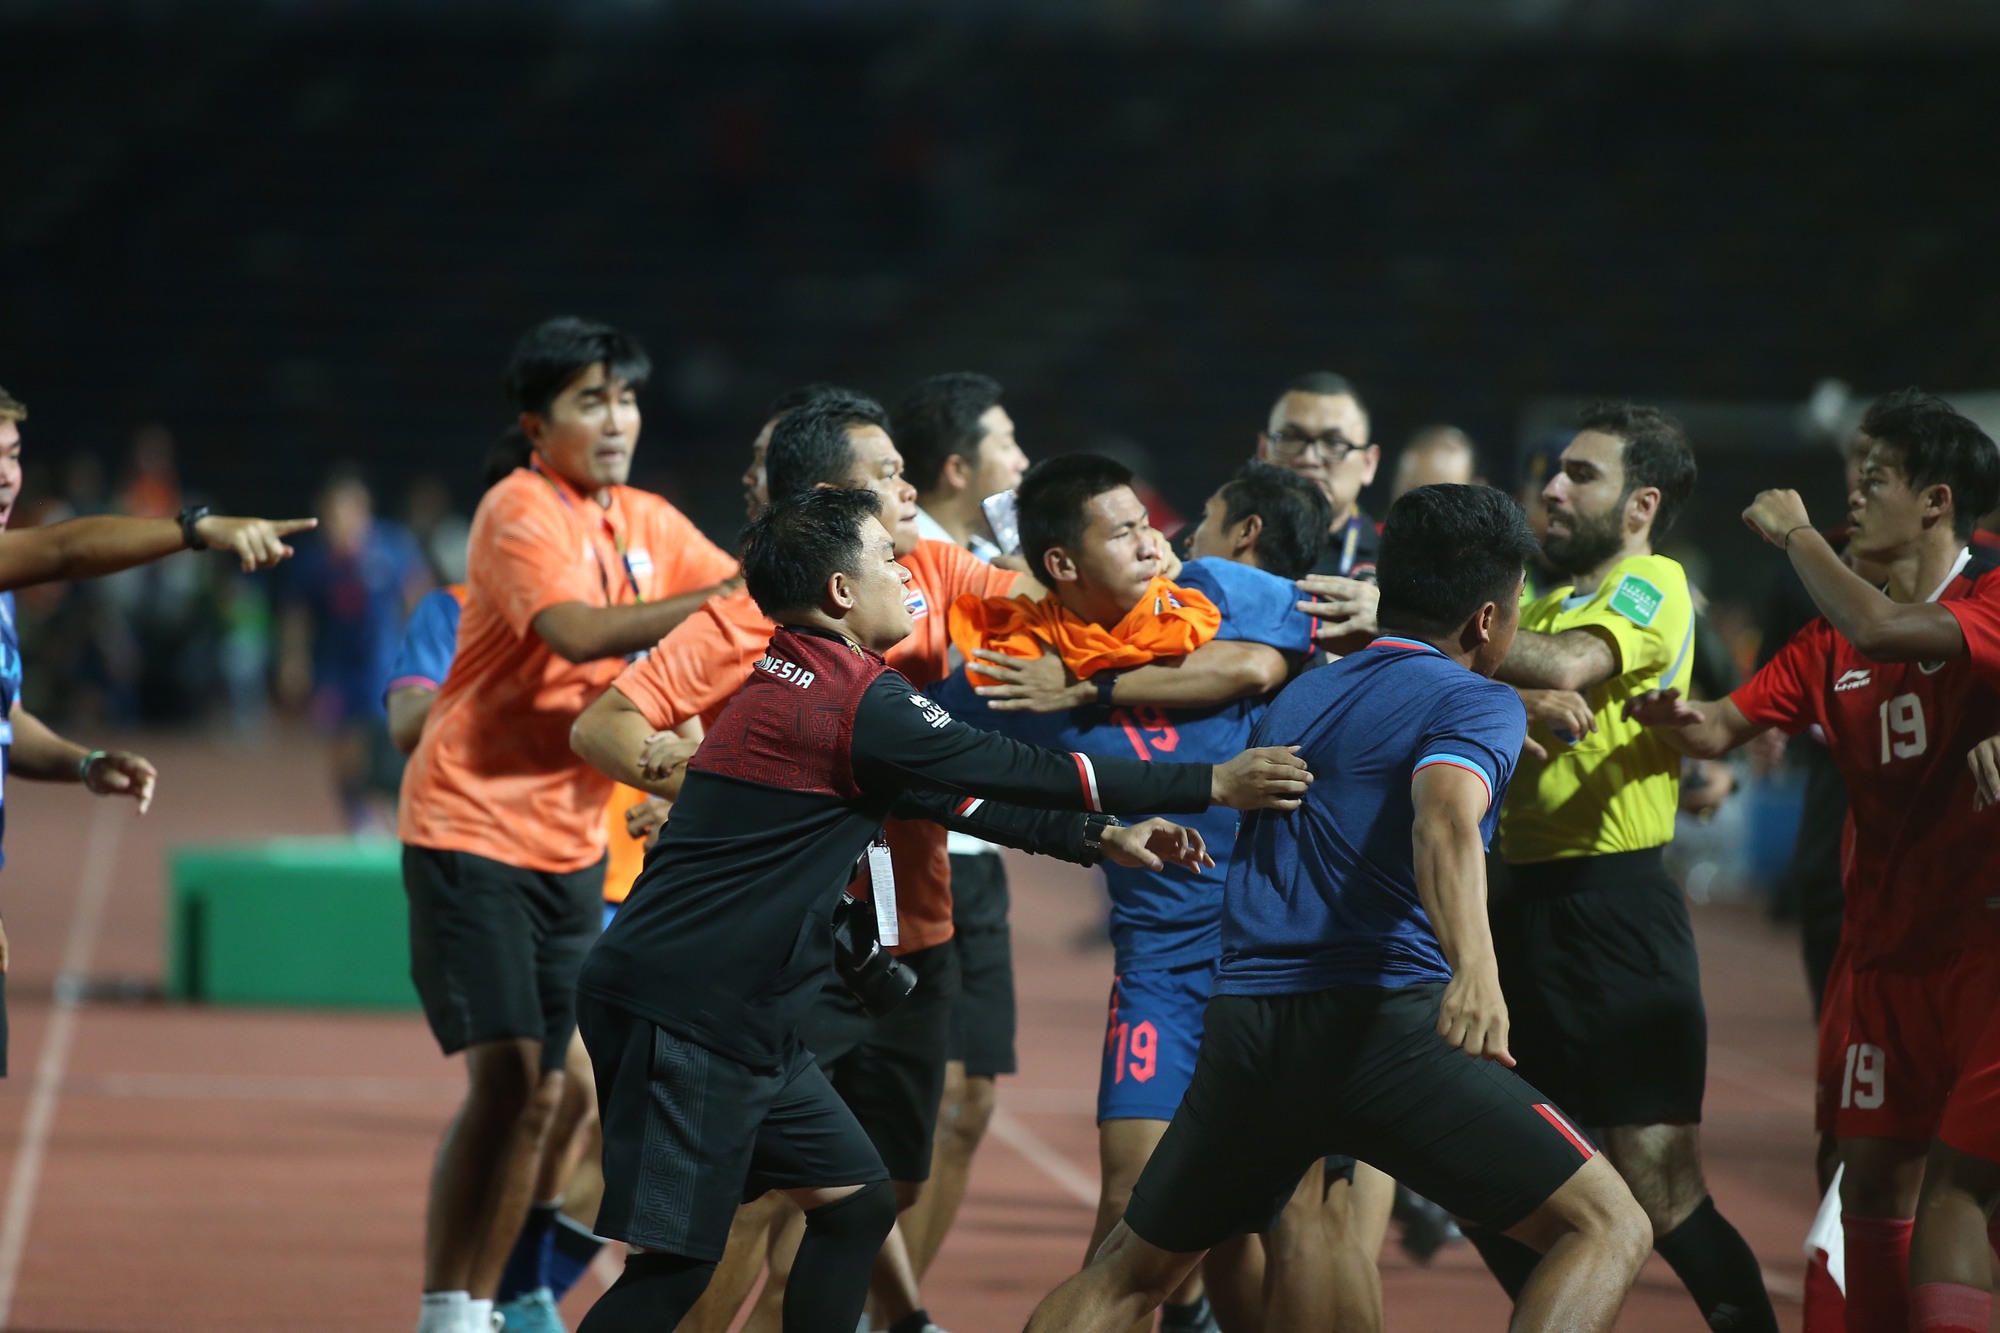 Cầu thủ Thái Lan kể về giây phút gạt hết tất cả để lao vào ẩu đả với Indonesia: Họ chạy qua và lắc lư - Ảnh 3.